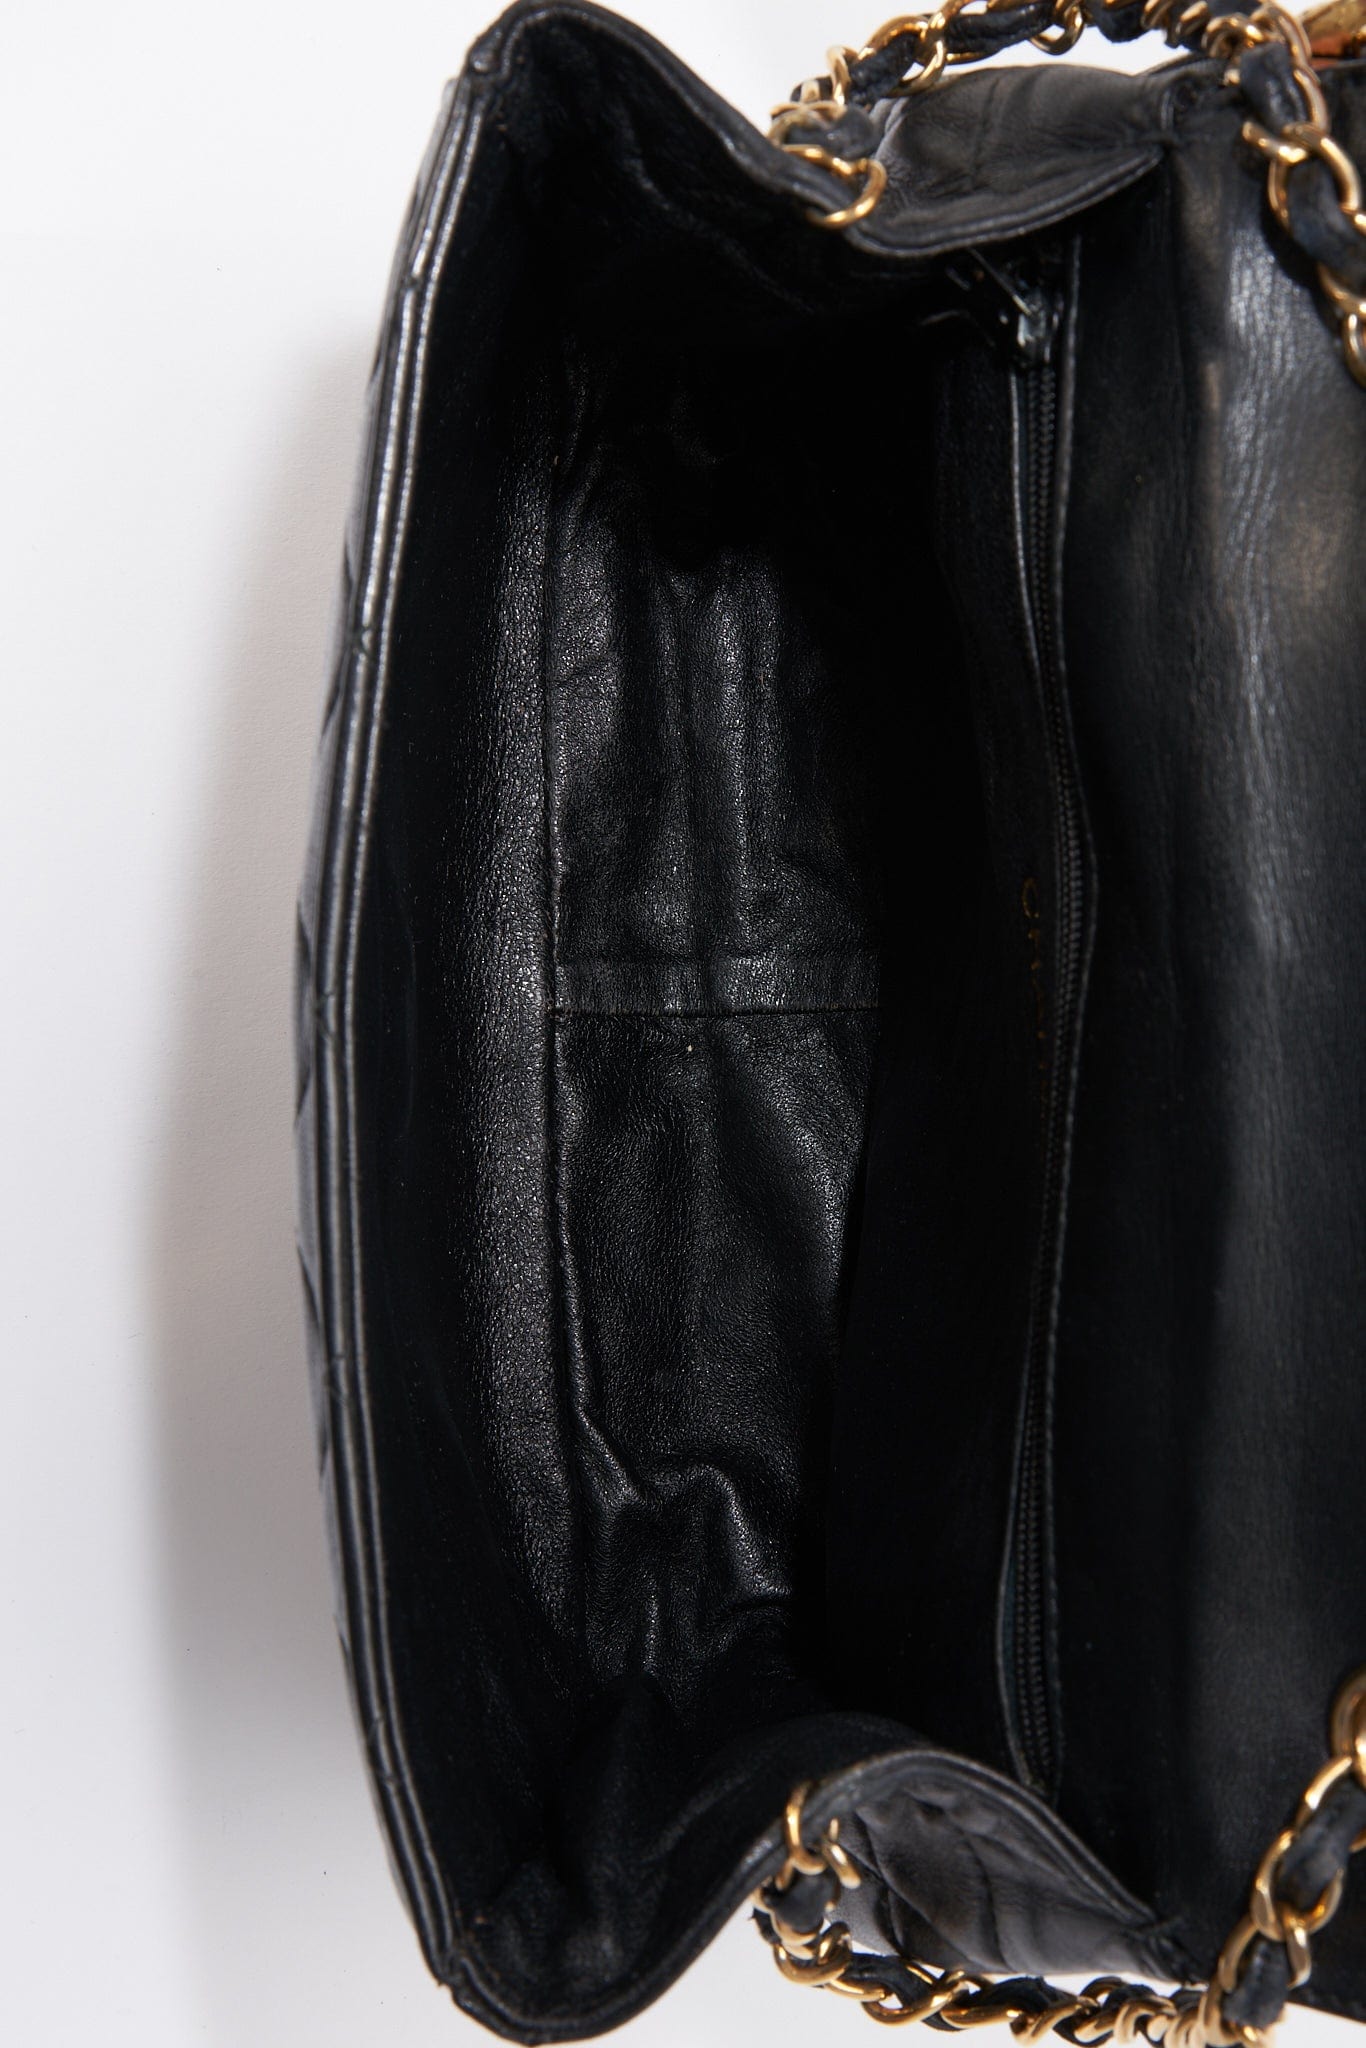 CHANEL Vintage CC Quilted Leather Tassel Shopper Bag Black